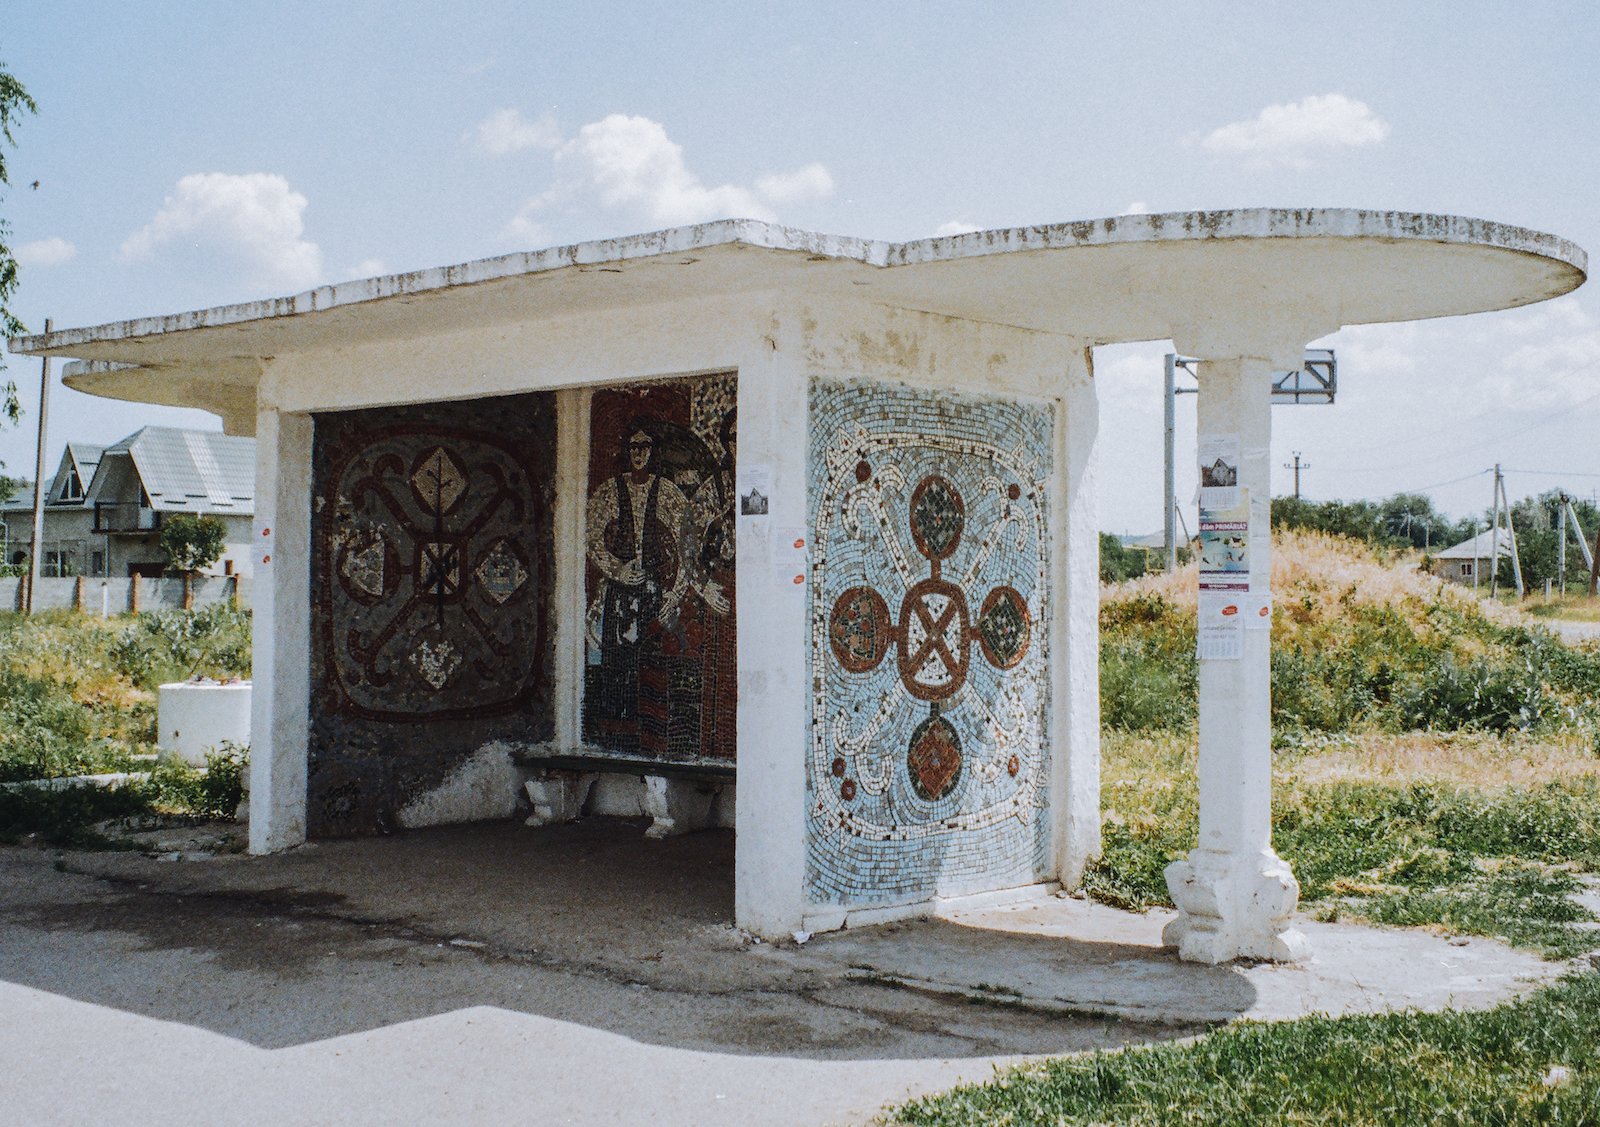 Take a tour across Moldova’s Soviet-era public art with this Insta account